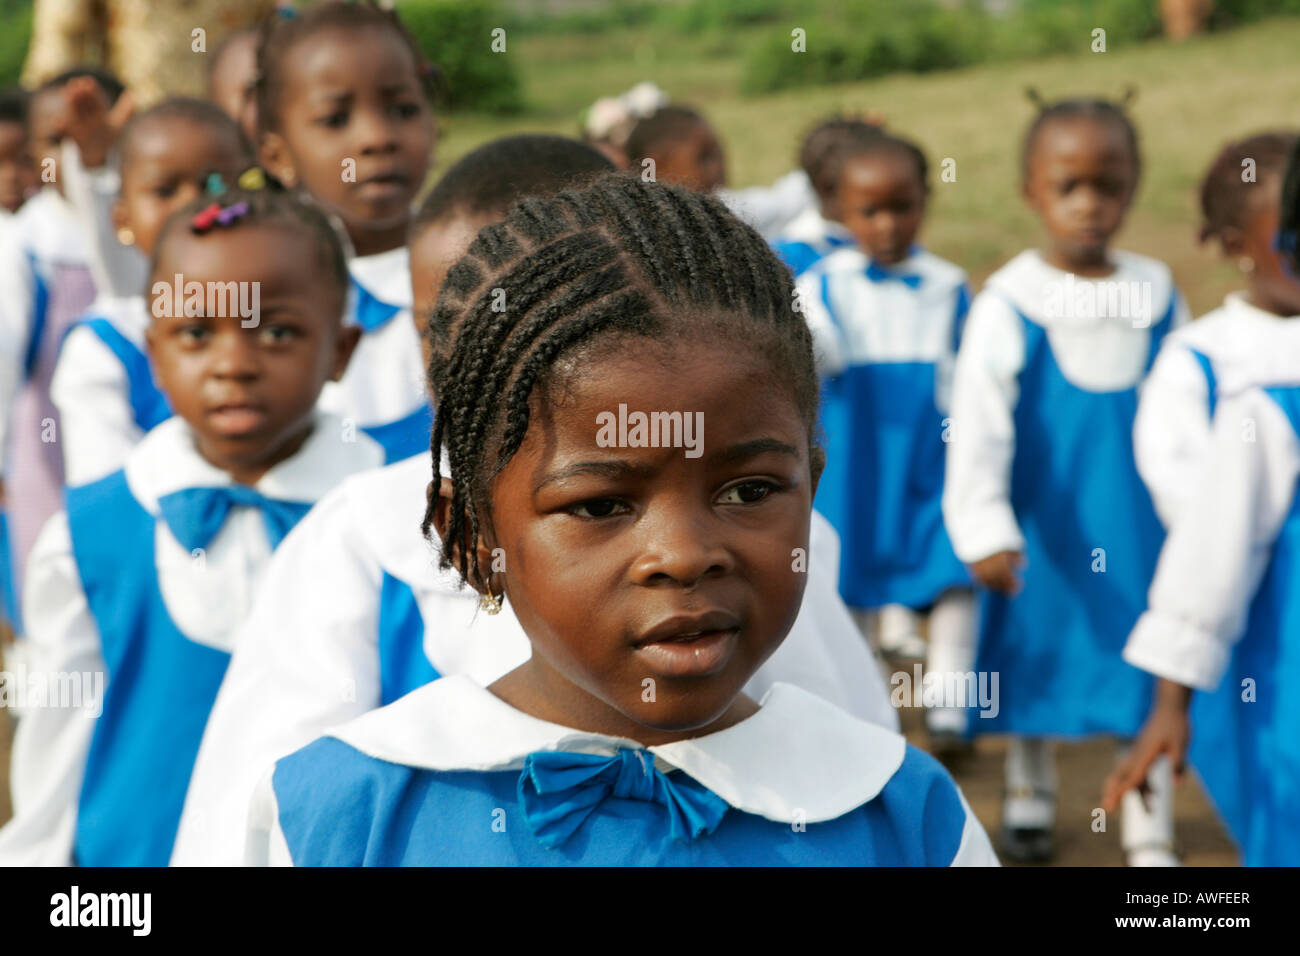 Kindergarten girls wearing uniforms, Cameroon, Africa Stock Photo